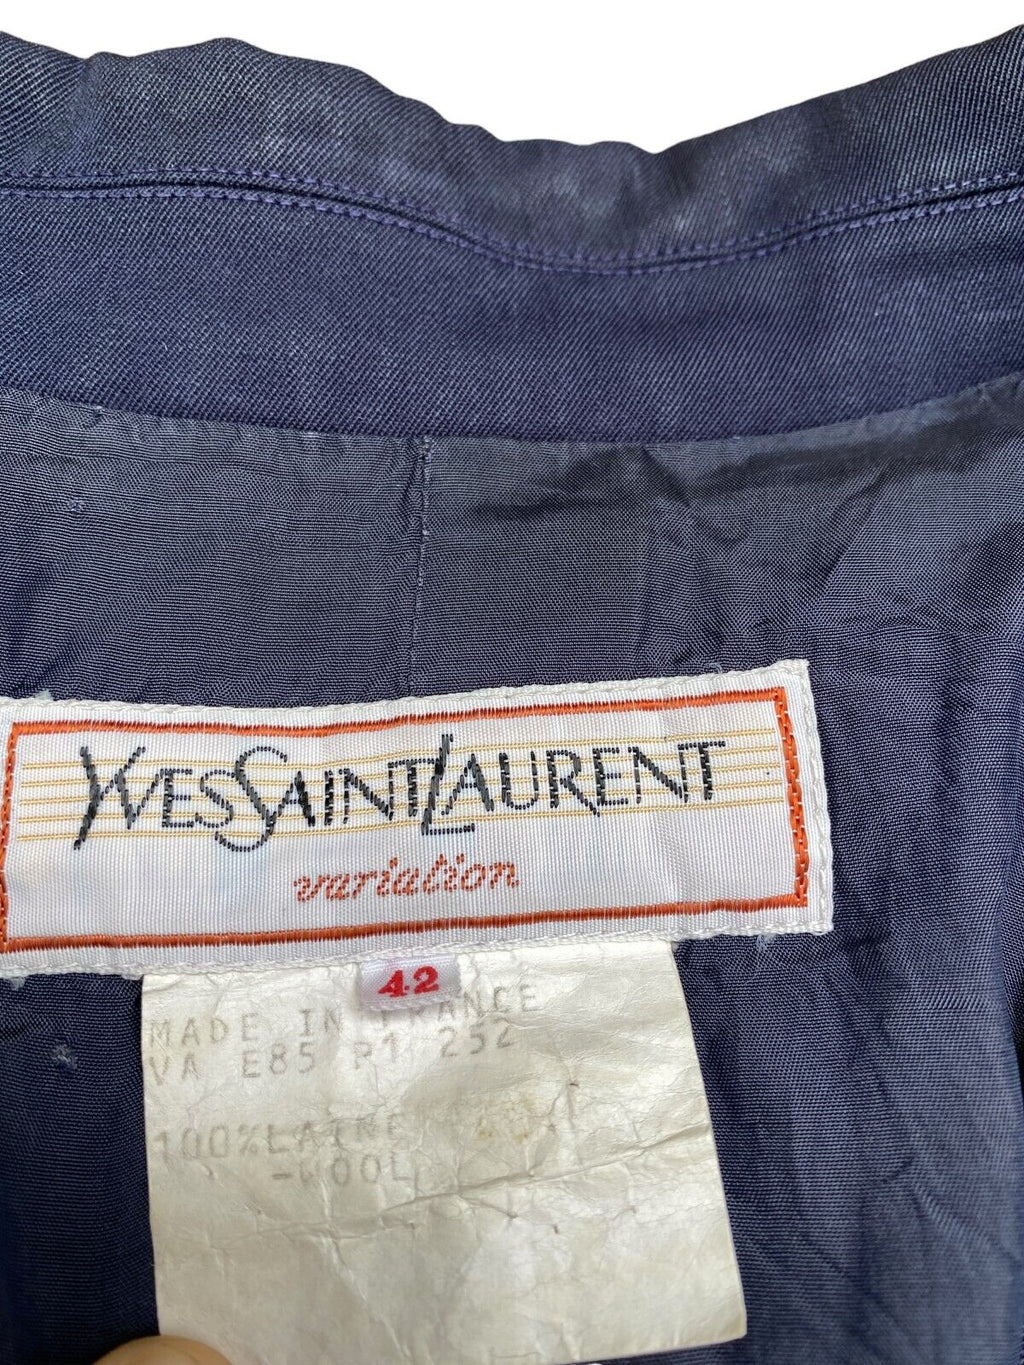 SS 1985 Vintage navy blazer  Size 42 / fits M